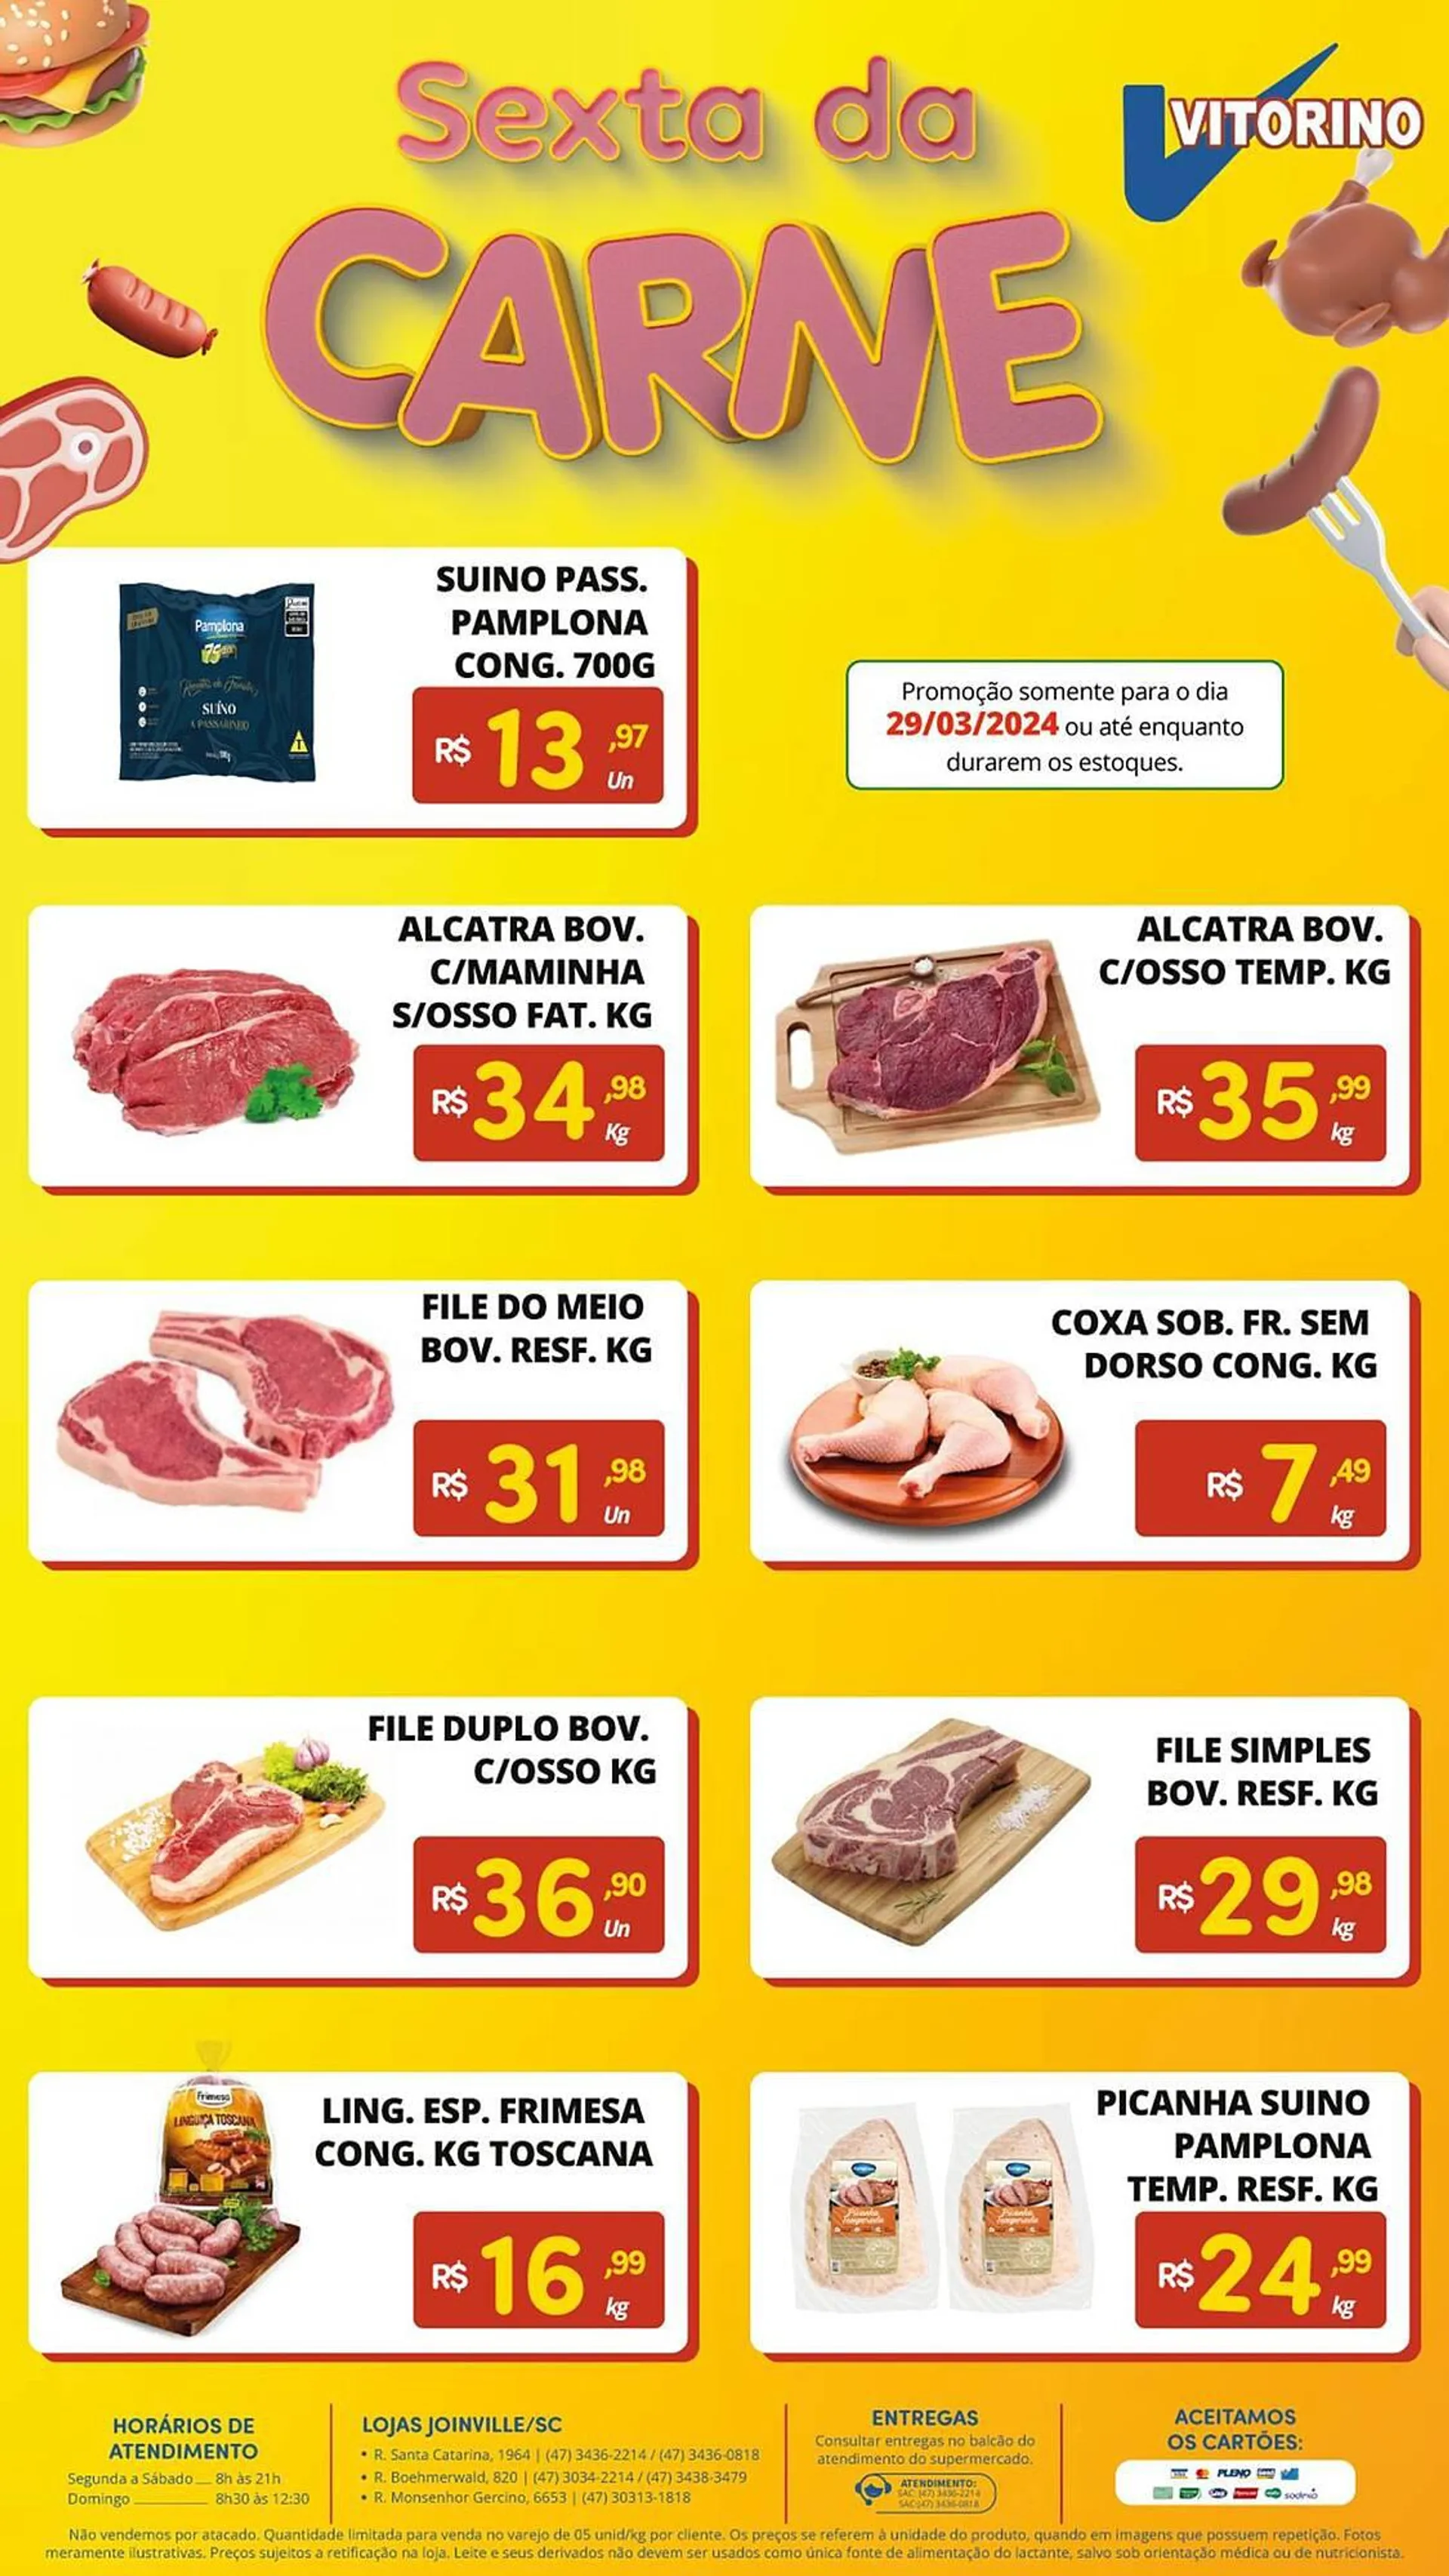 Encarte de Catálogo Supermercado Vitorino 3 de abril até 29 de abril 2024 - Pagina 